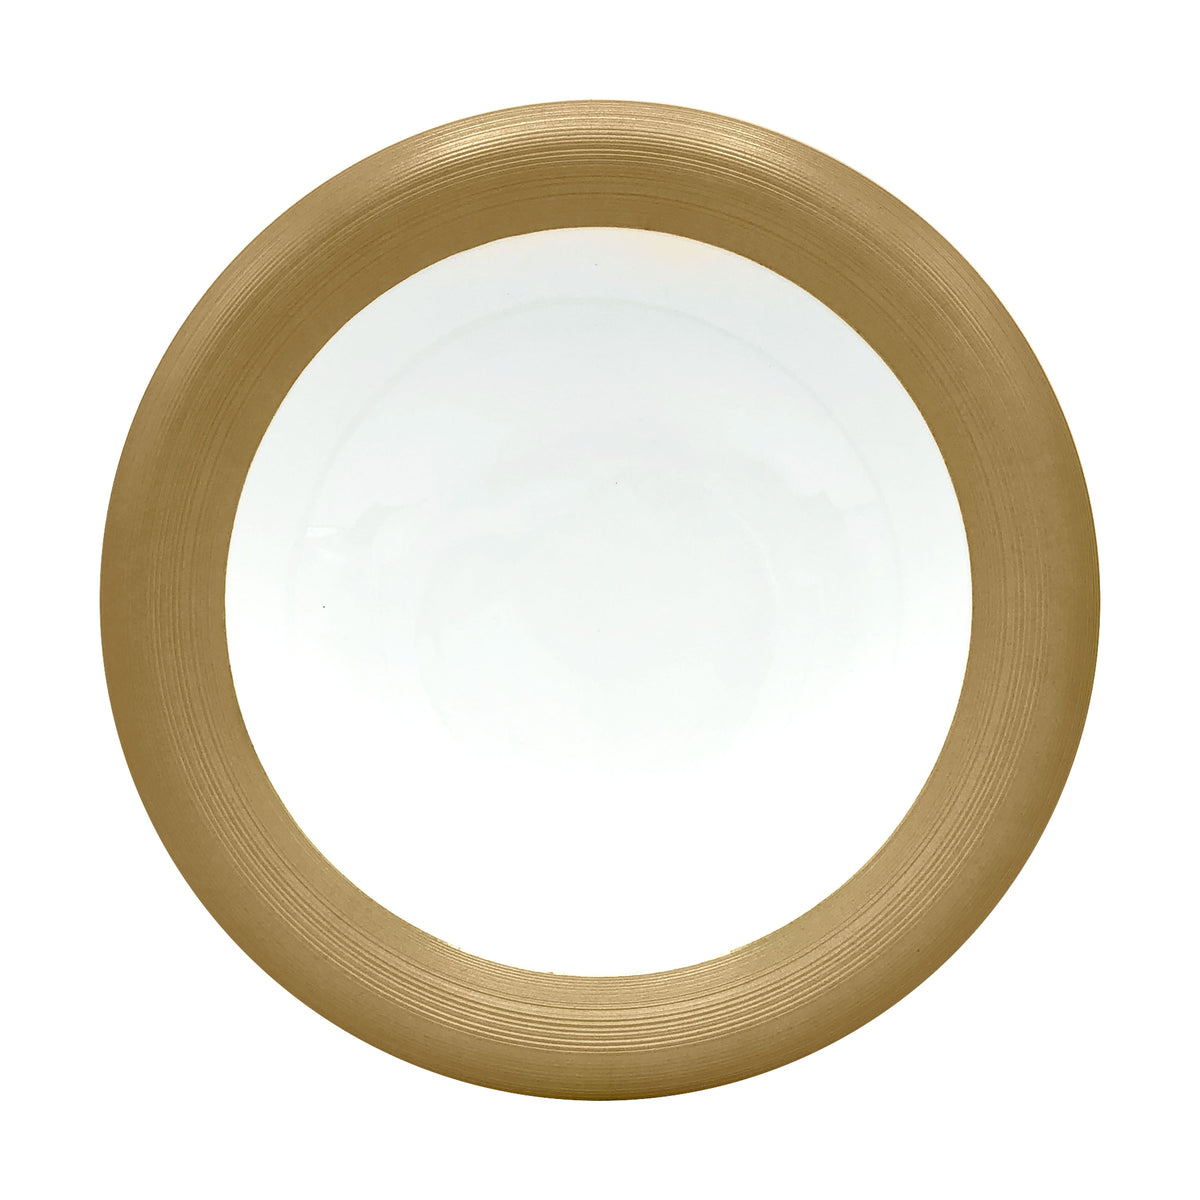 HEMISPHERE Copper - Bubble soup plate